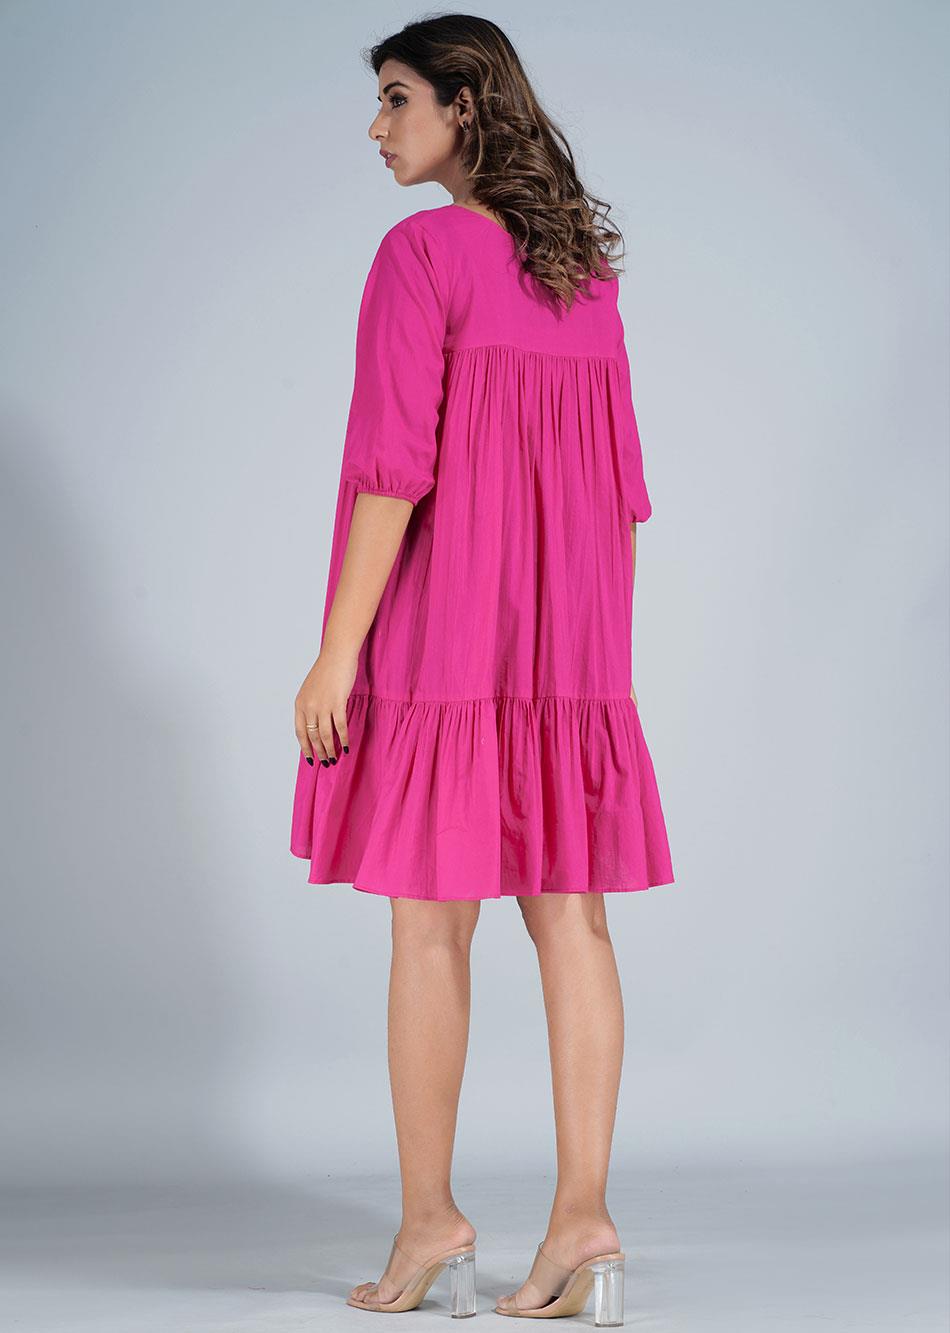 Pink Mini Tier Dress  By Jovi Fashion